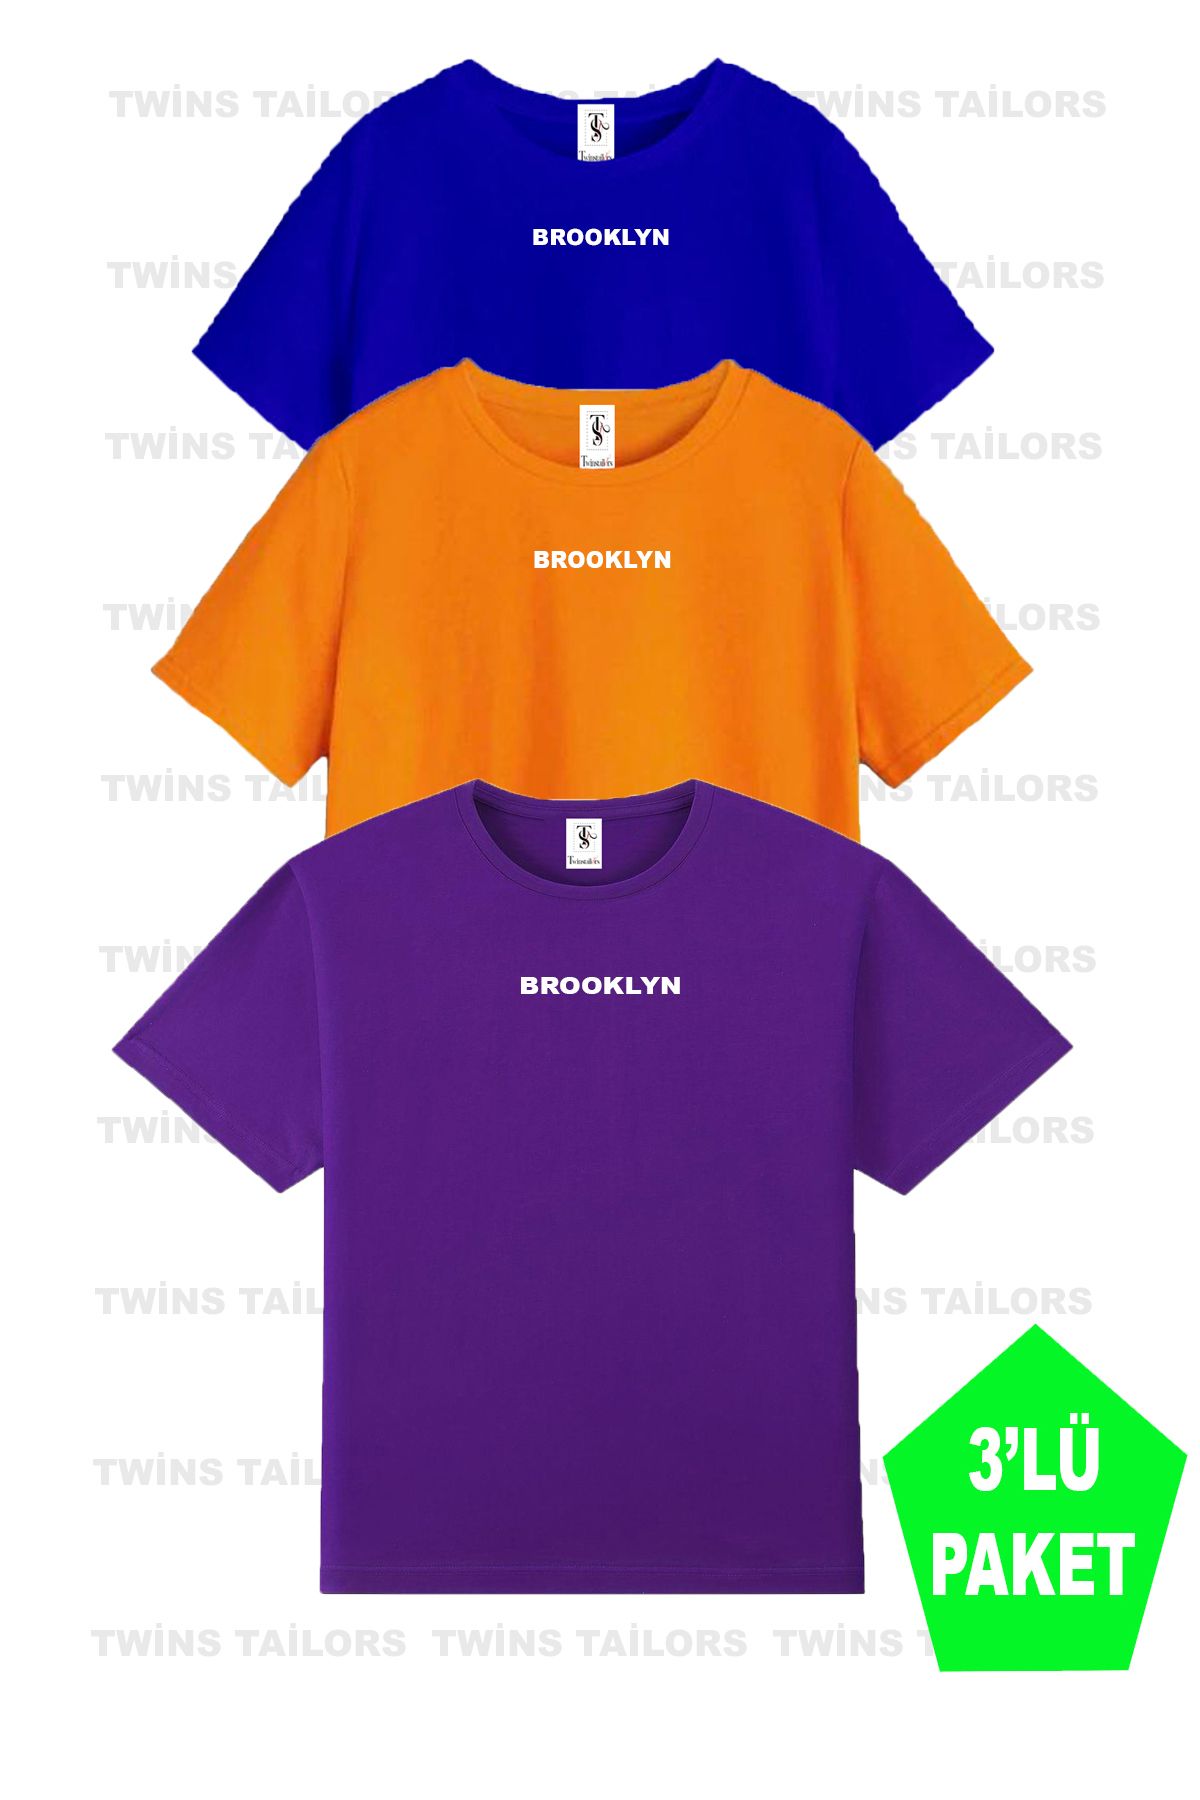 twins tailors Brooklyn Baskılı 3'lü Paket Unisex Saks Mavisi-Turuncu-Mor Çocuk Tişört/T-Shirt